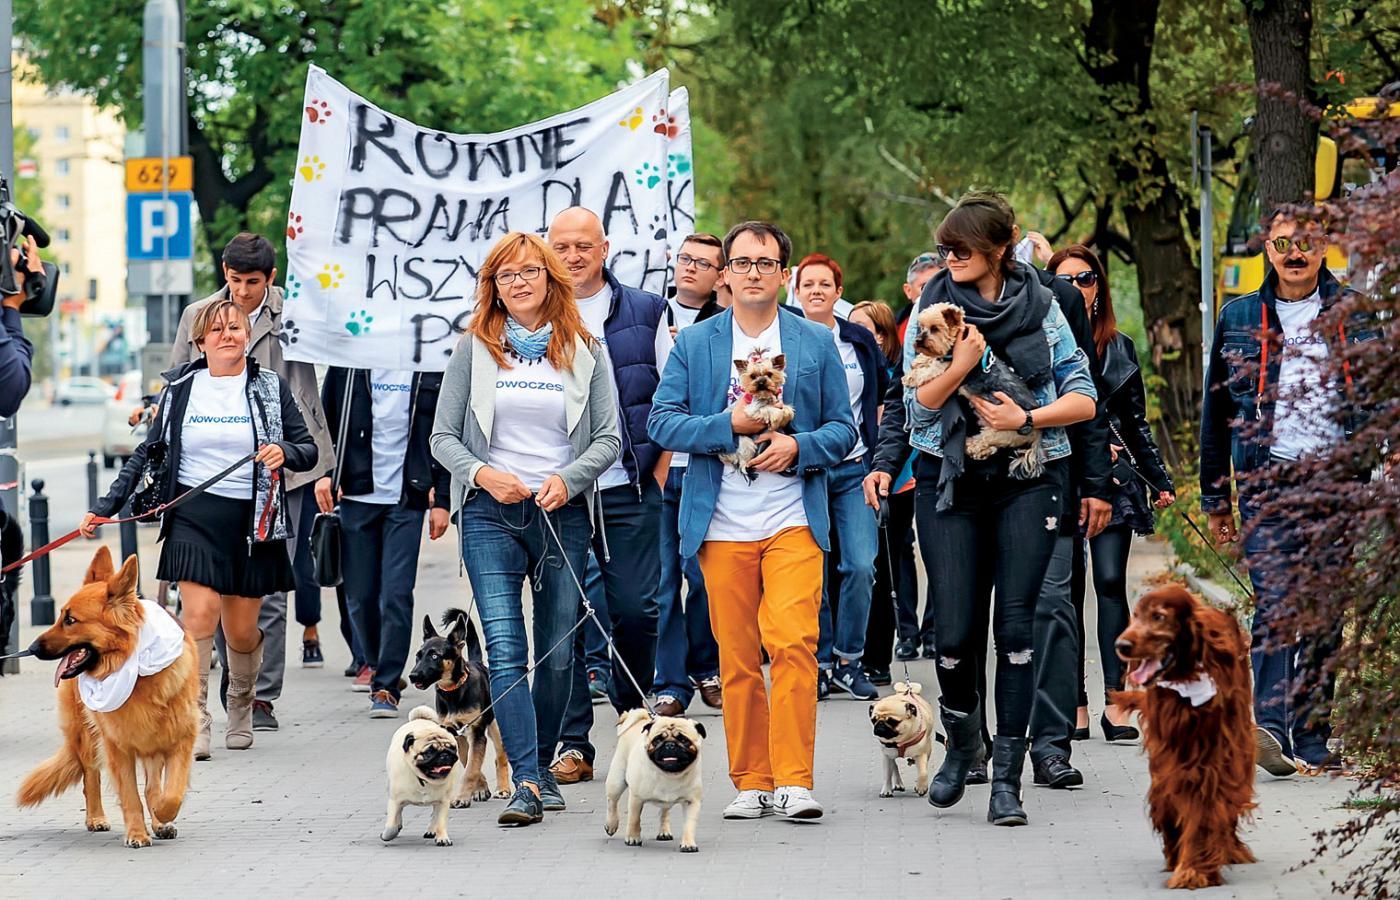 Nowoczesna korzysta z każdej okazji, by zaistnieć. Tutaj demonstracja „Weekend w SPA dla każdego psa!” – po publikacjach o szefie Solidarności Piotrze Dudzie i jego yorku Kacperku.